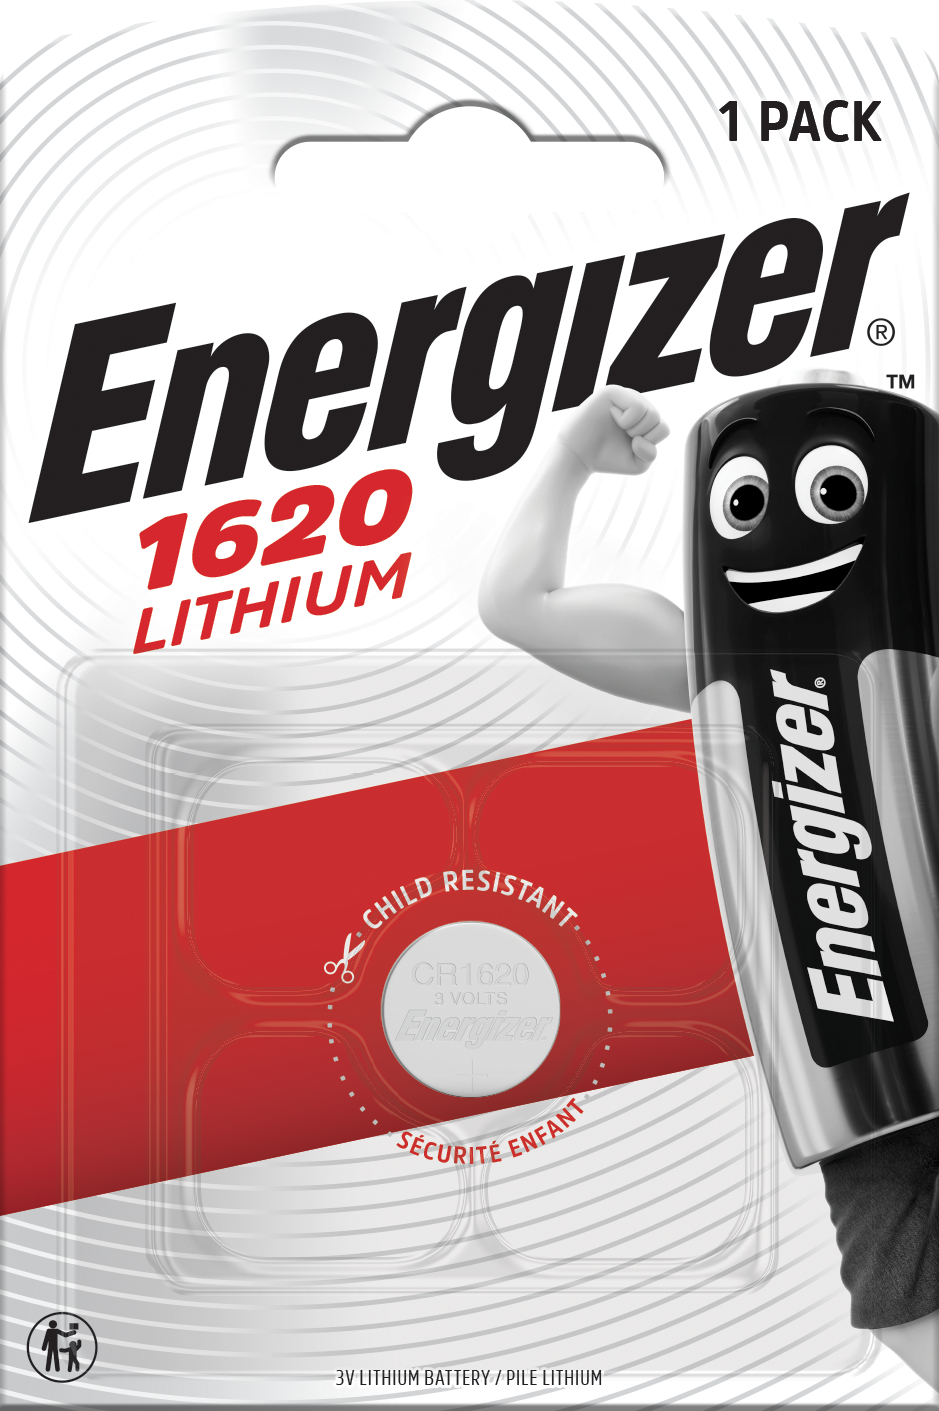 [8558870] Batteri Lithium CR1620 1p